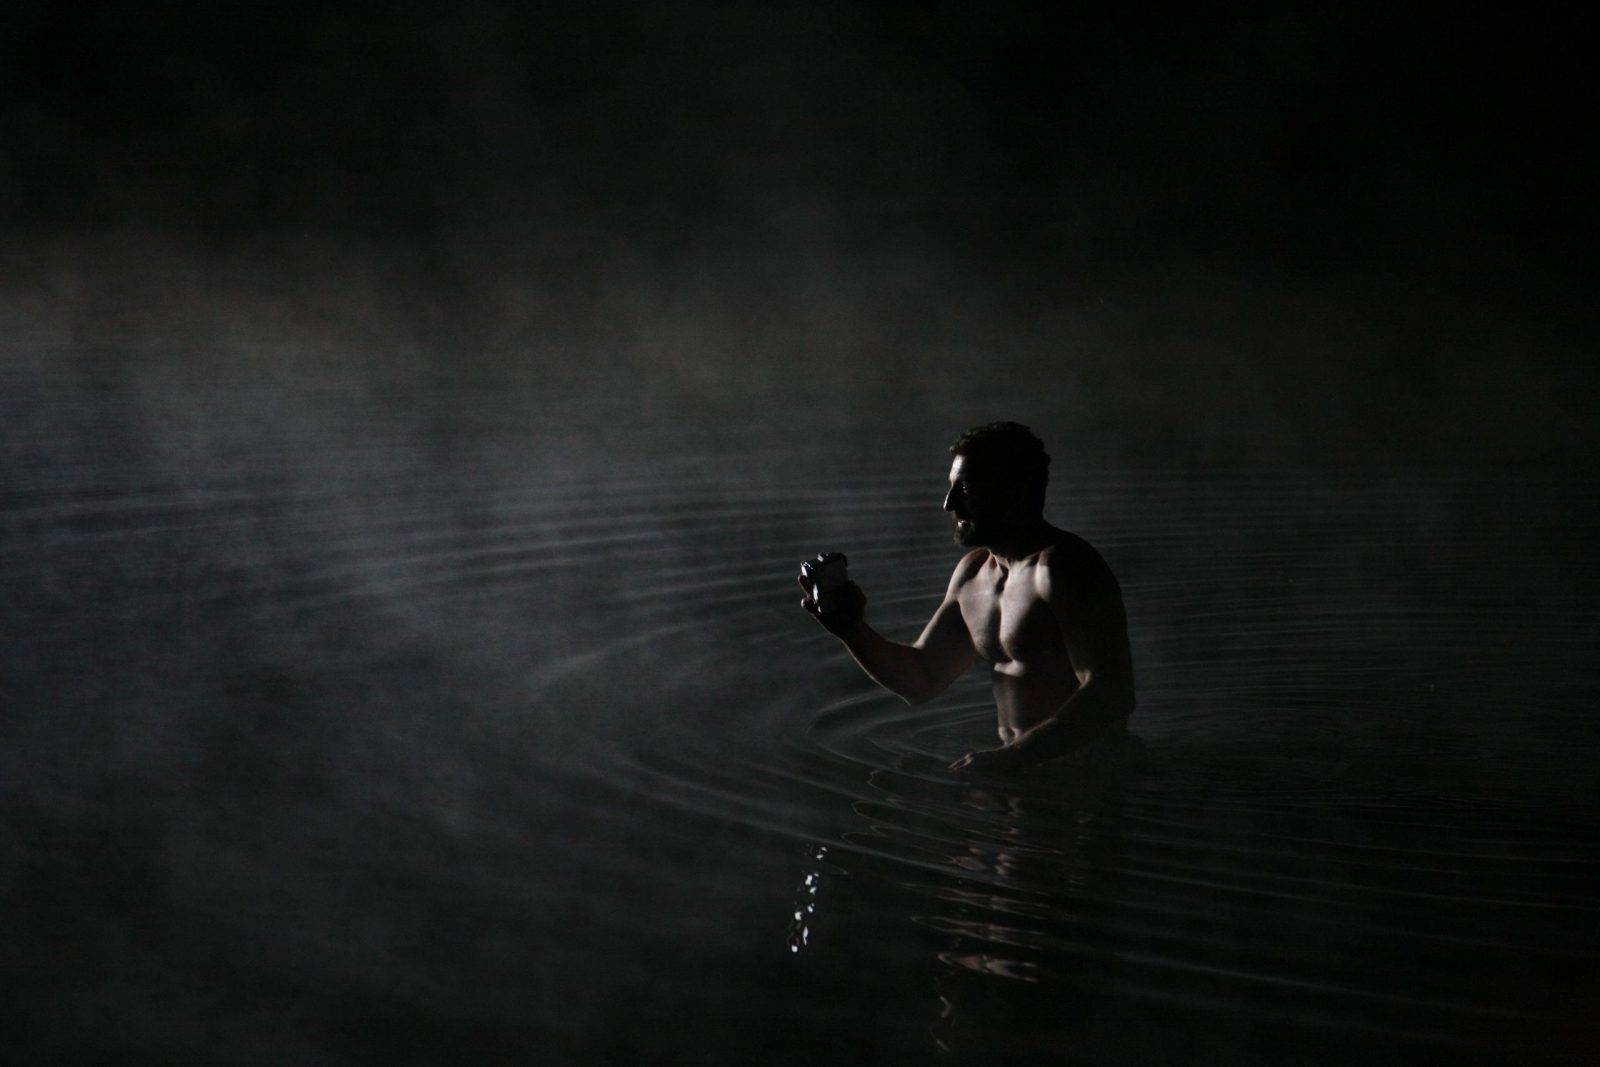 Hunter of Water Silence by Jan Kadlec